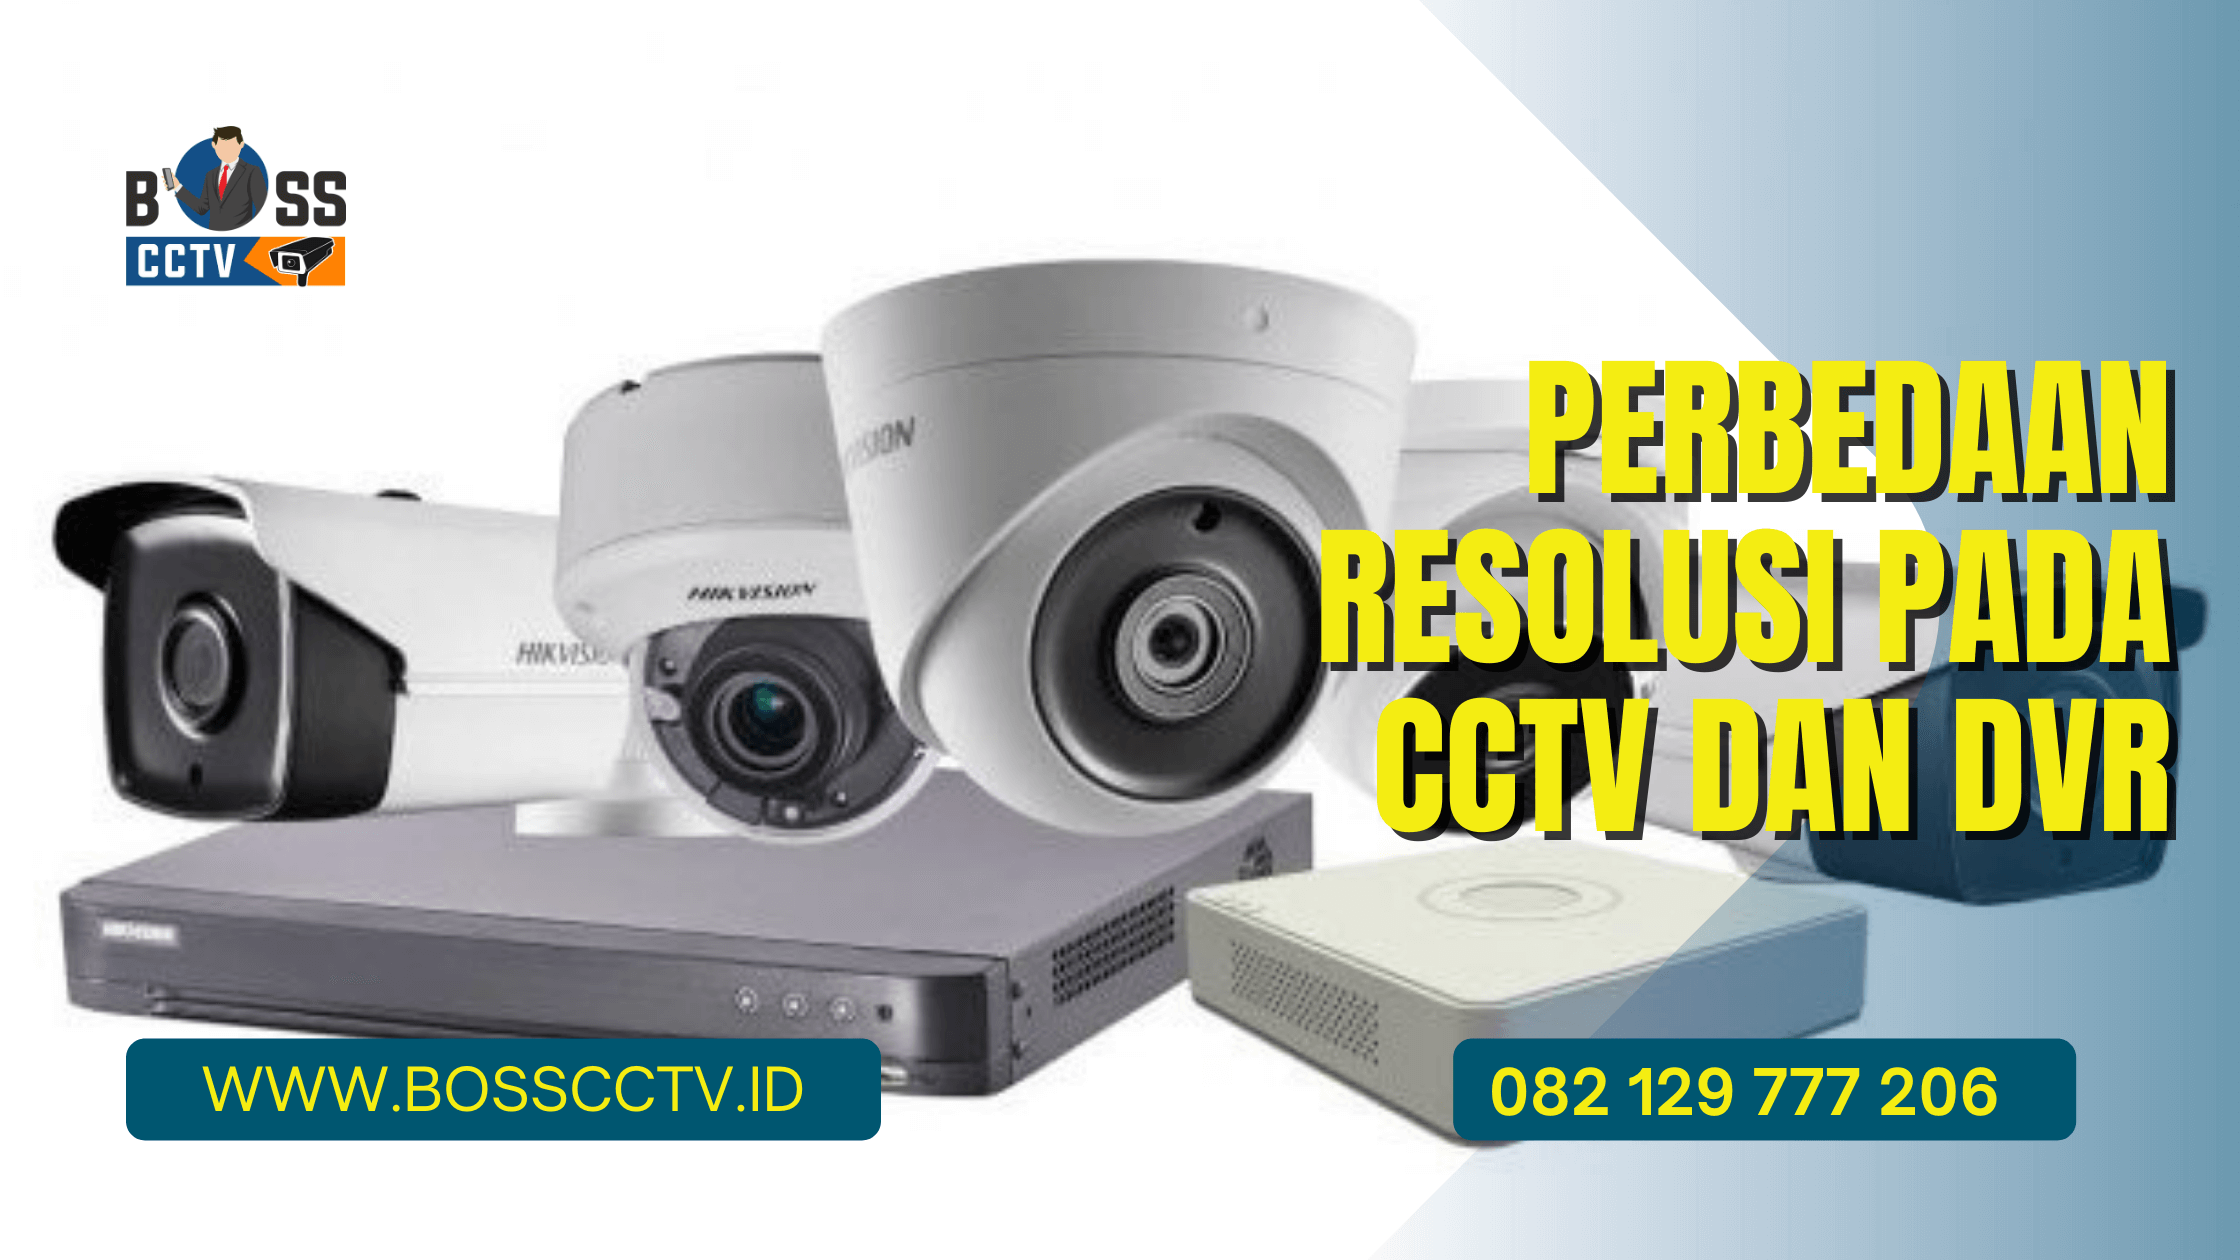 Perbedaan Resolusi pada CCTV dan DVR